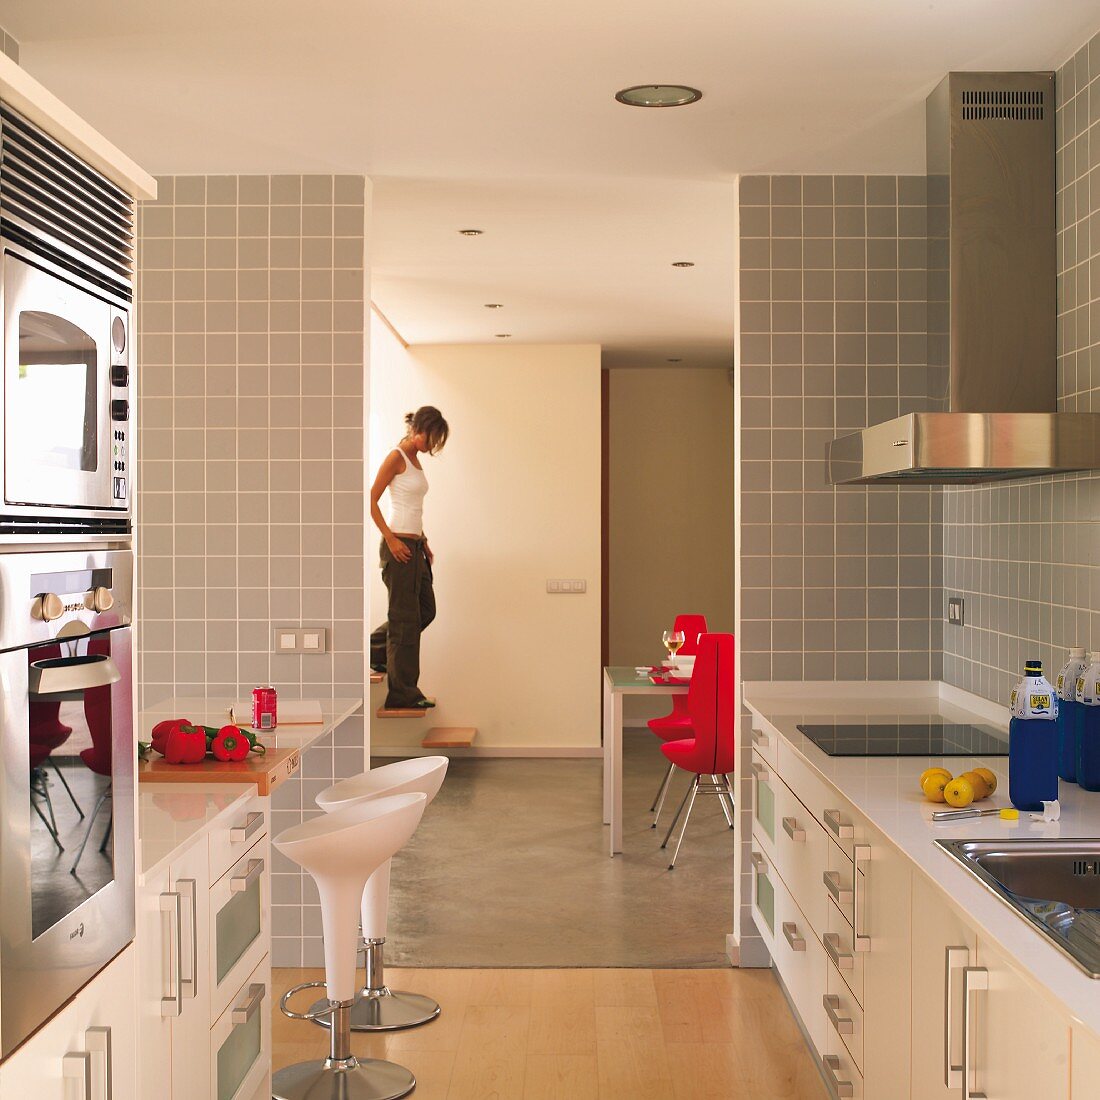 weiße Designerküche mit hellgrauen Fliesen an Wand, im Hintergrund raumhoher Durchgang und Blick ins Wohnzimmer mit Frau auf Treppe